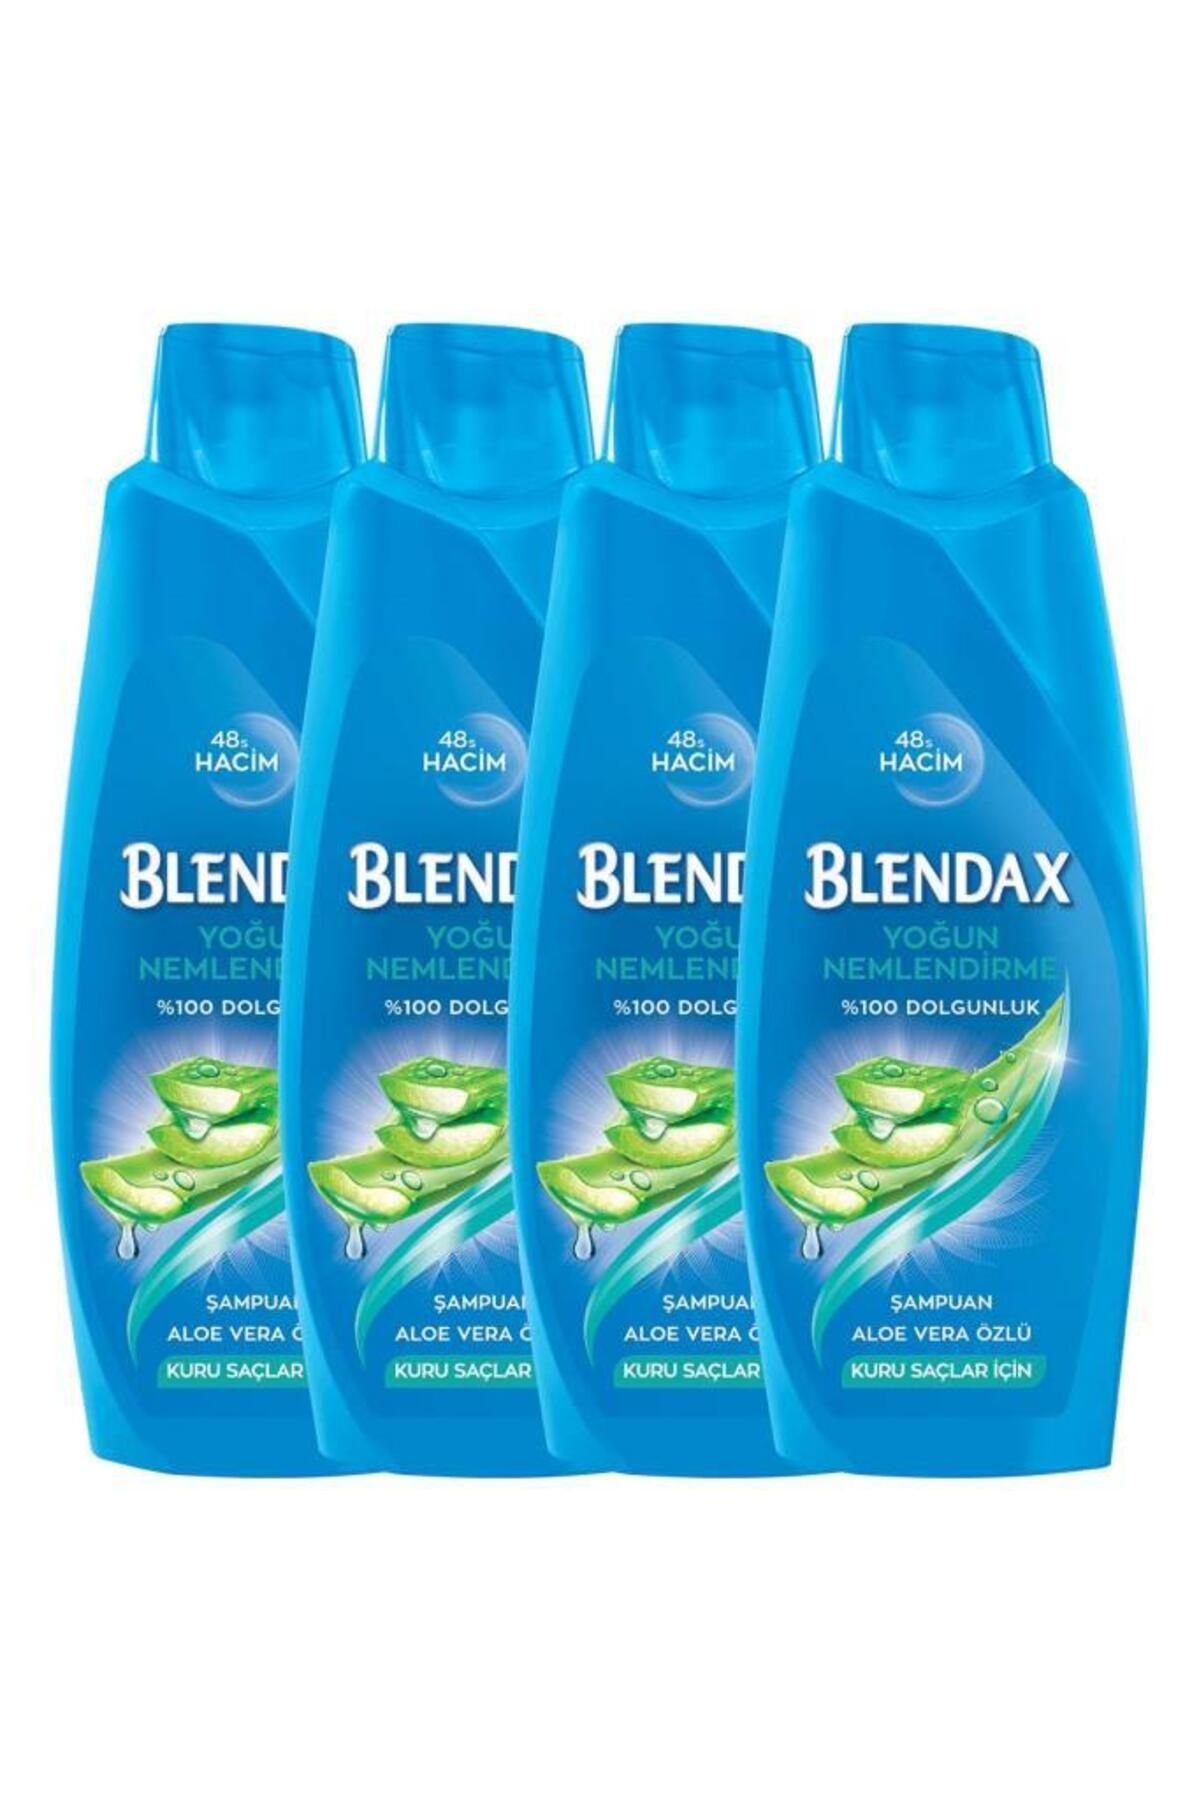 Blendax Yoğun Nemlendirme Aloe Vera Özlü Şampuan 500 ml X 4 Adet